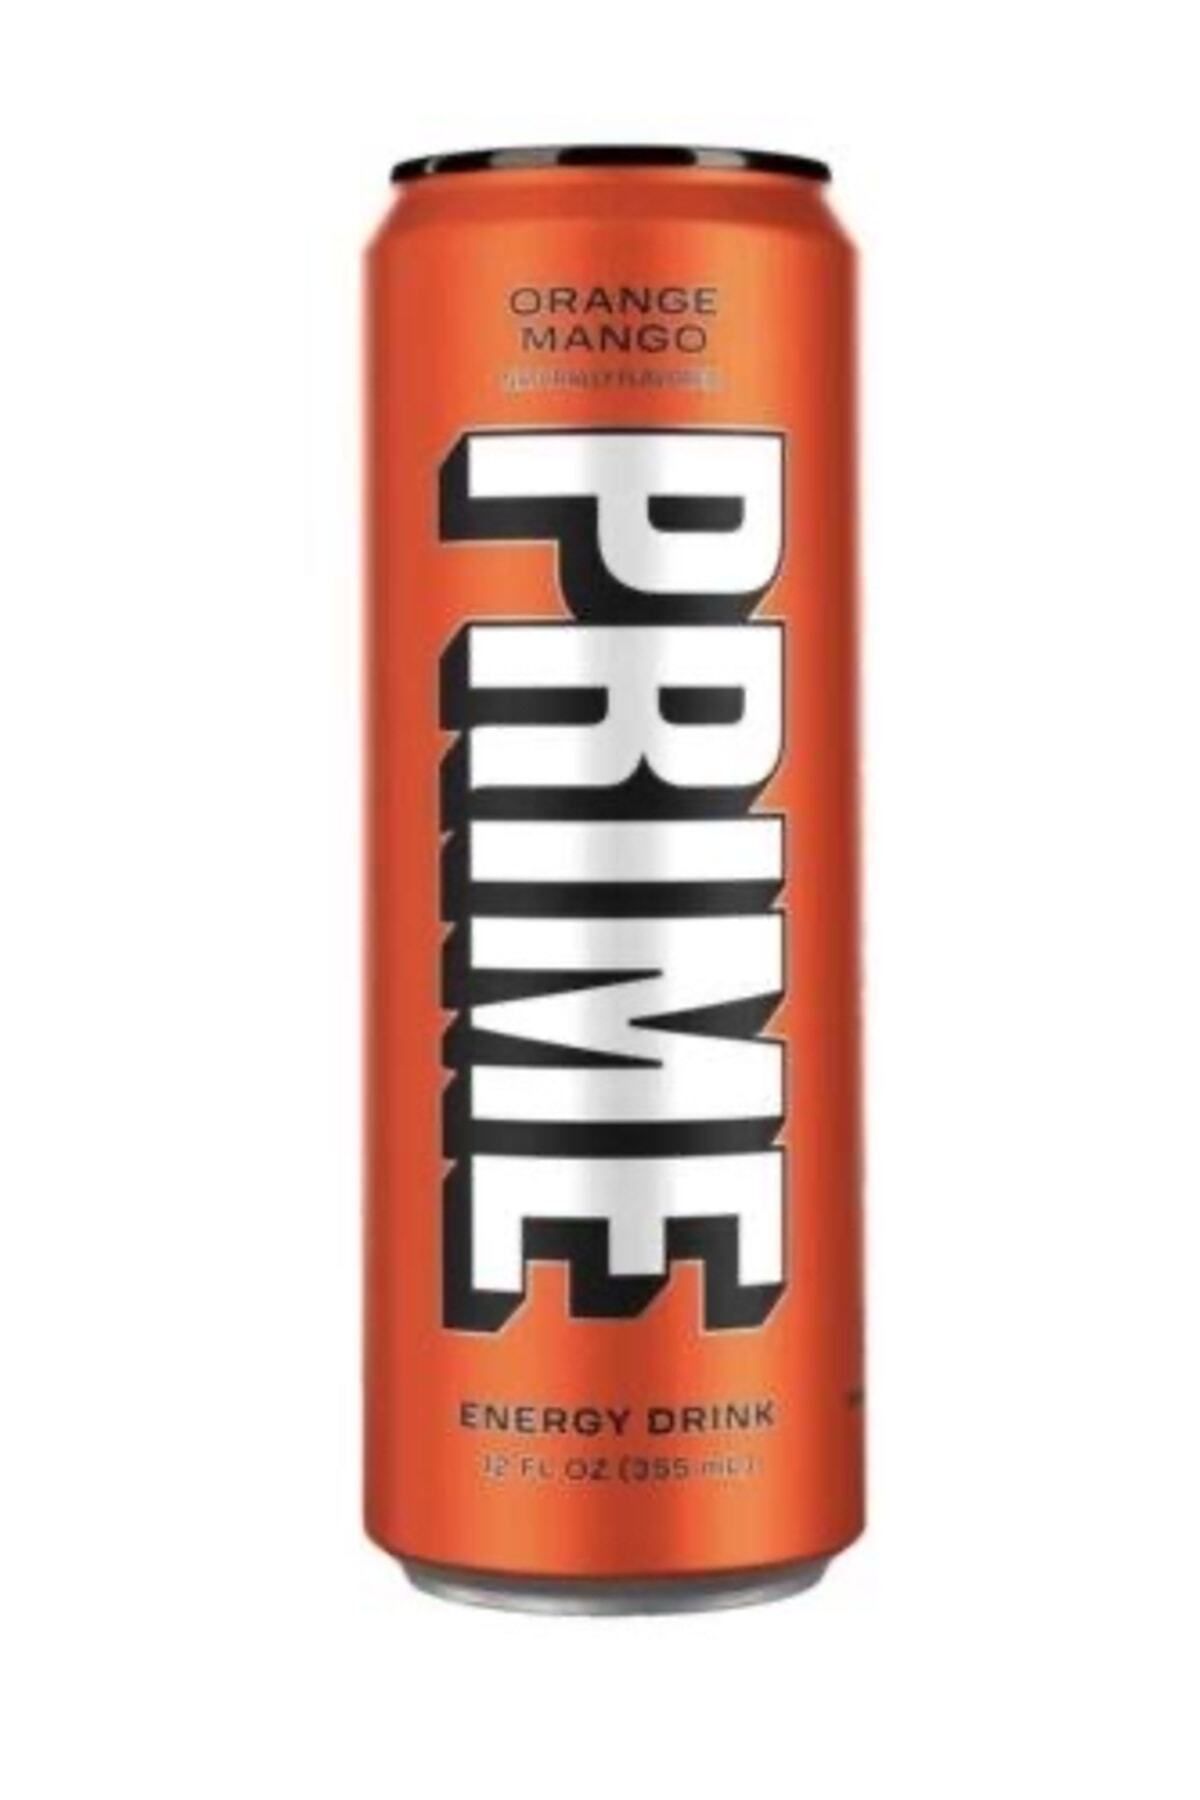 Prime Energy Drink Orange Mango Enerji Içeceği 355 ml